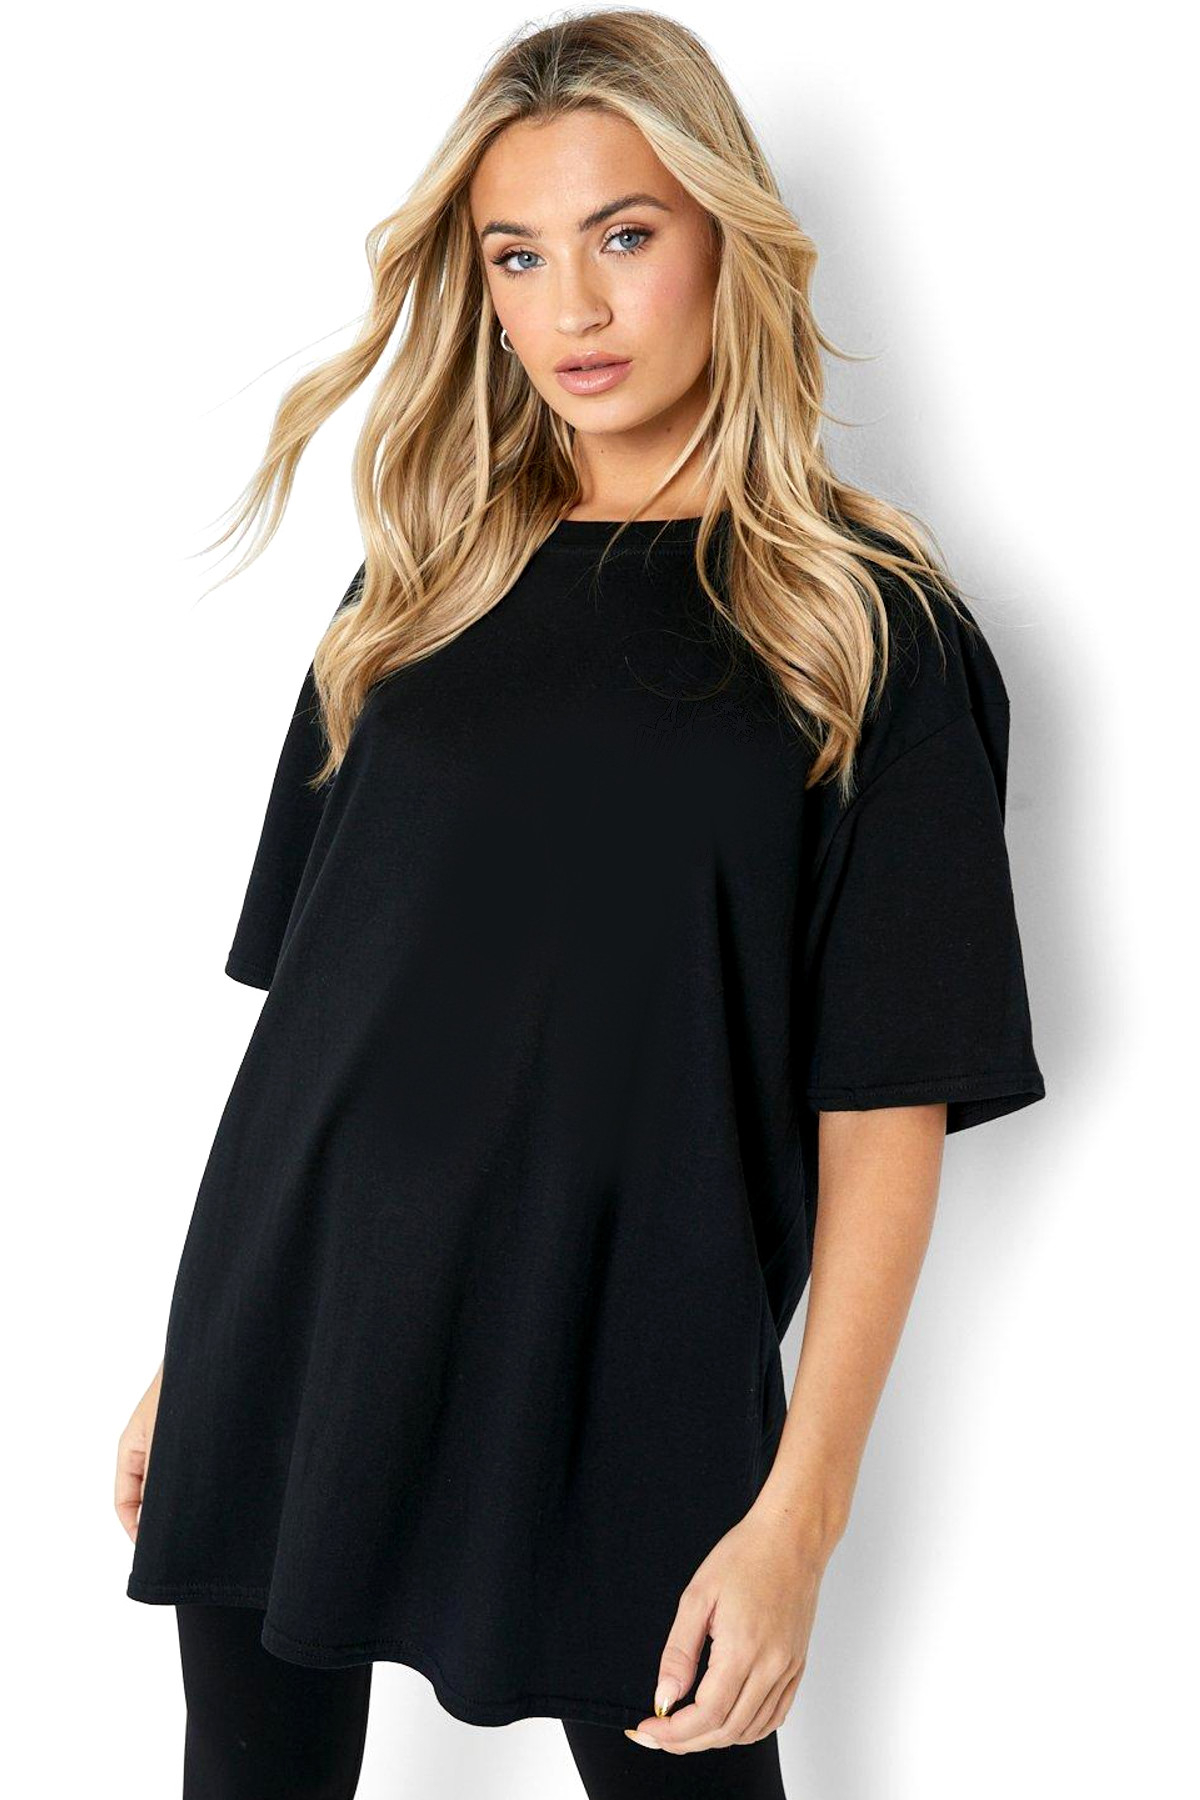 Akan Kelebek Siyah Oversize Kısa Kollu Kadın T-shirt